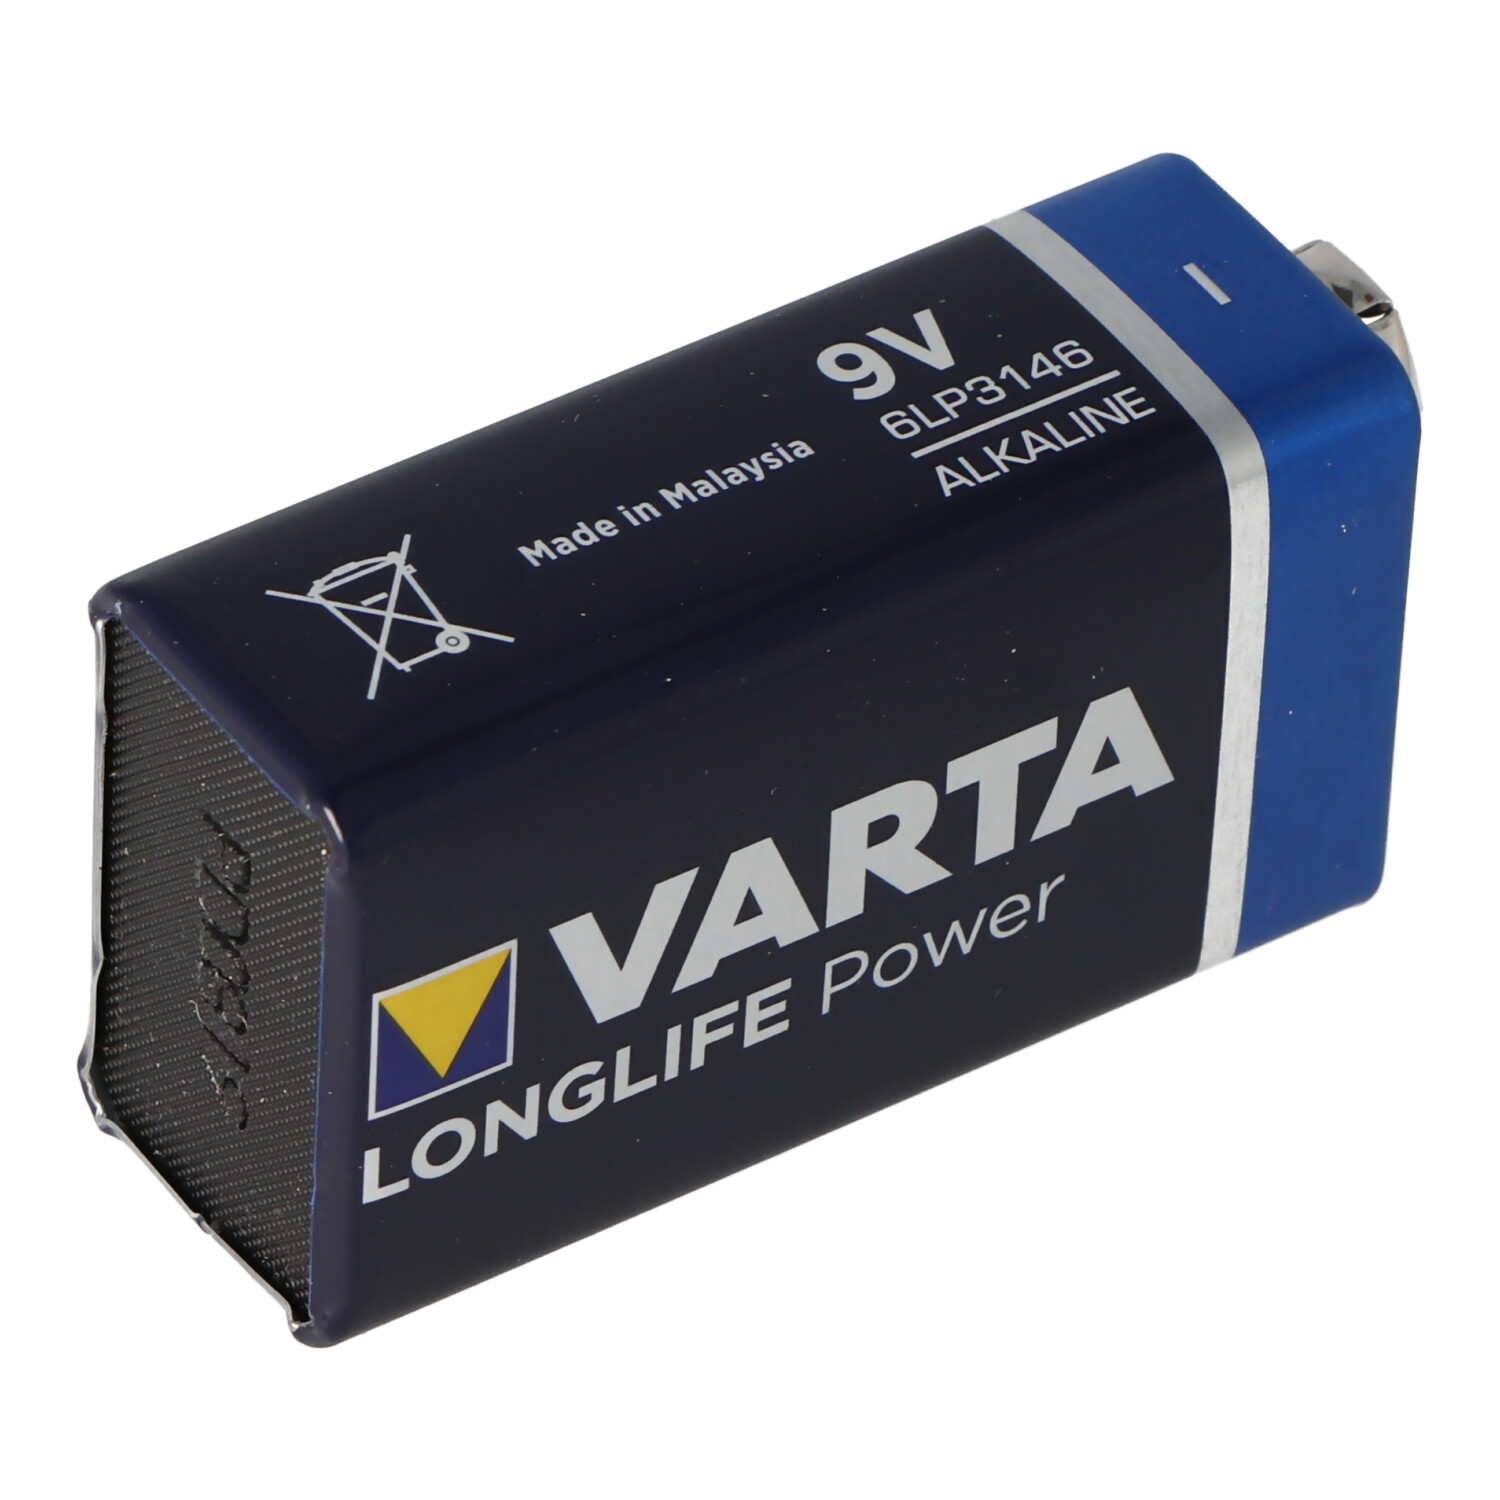 Varta Longlife Power (ehem. High Energy) 9V E-Block 4922 Batterie 20er Box in Folie